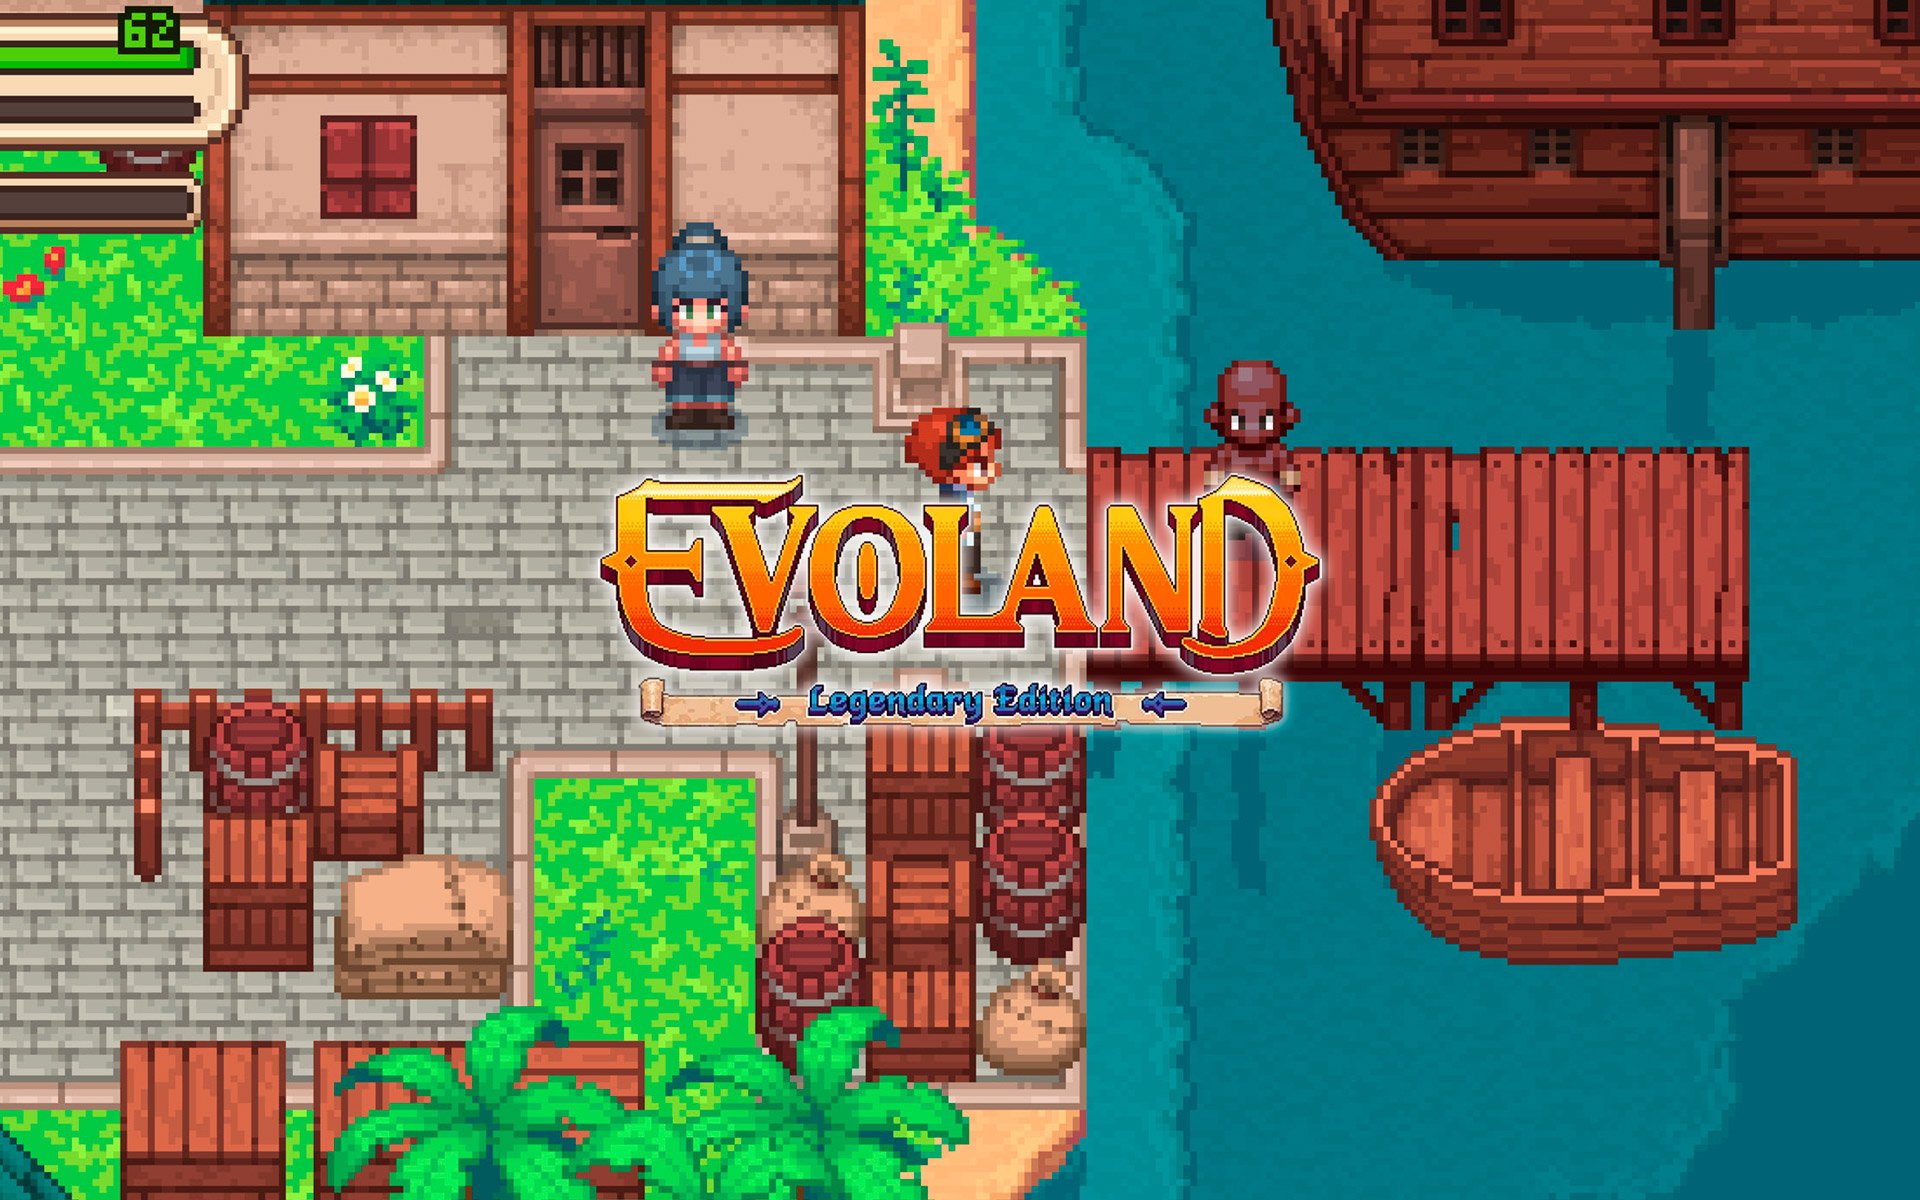 Evoland - Legendary Edition por R$ 36.99